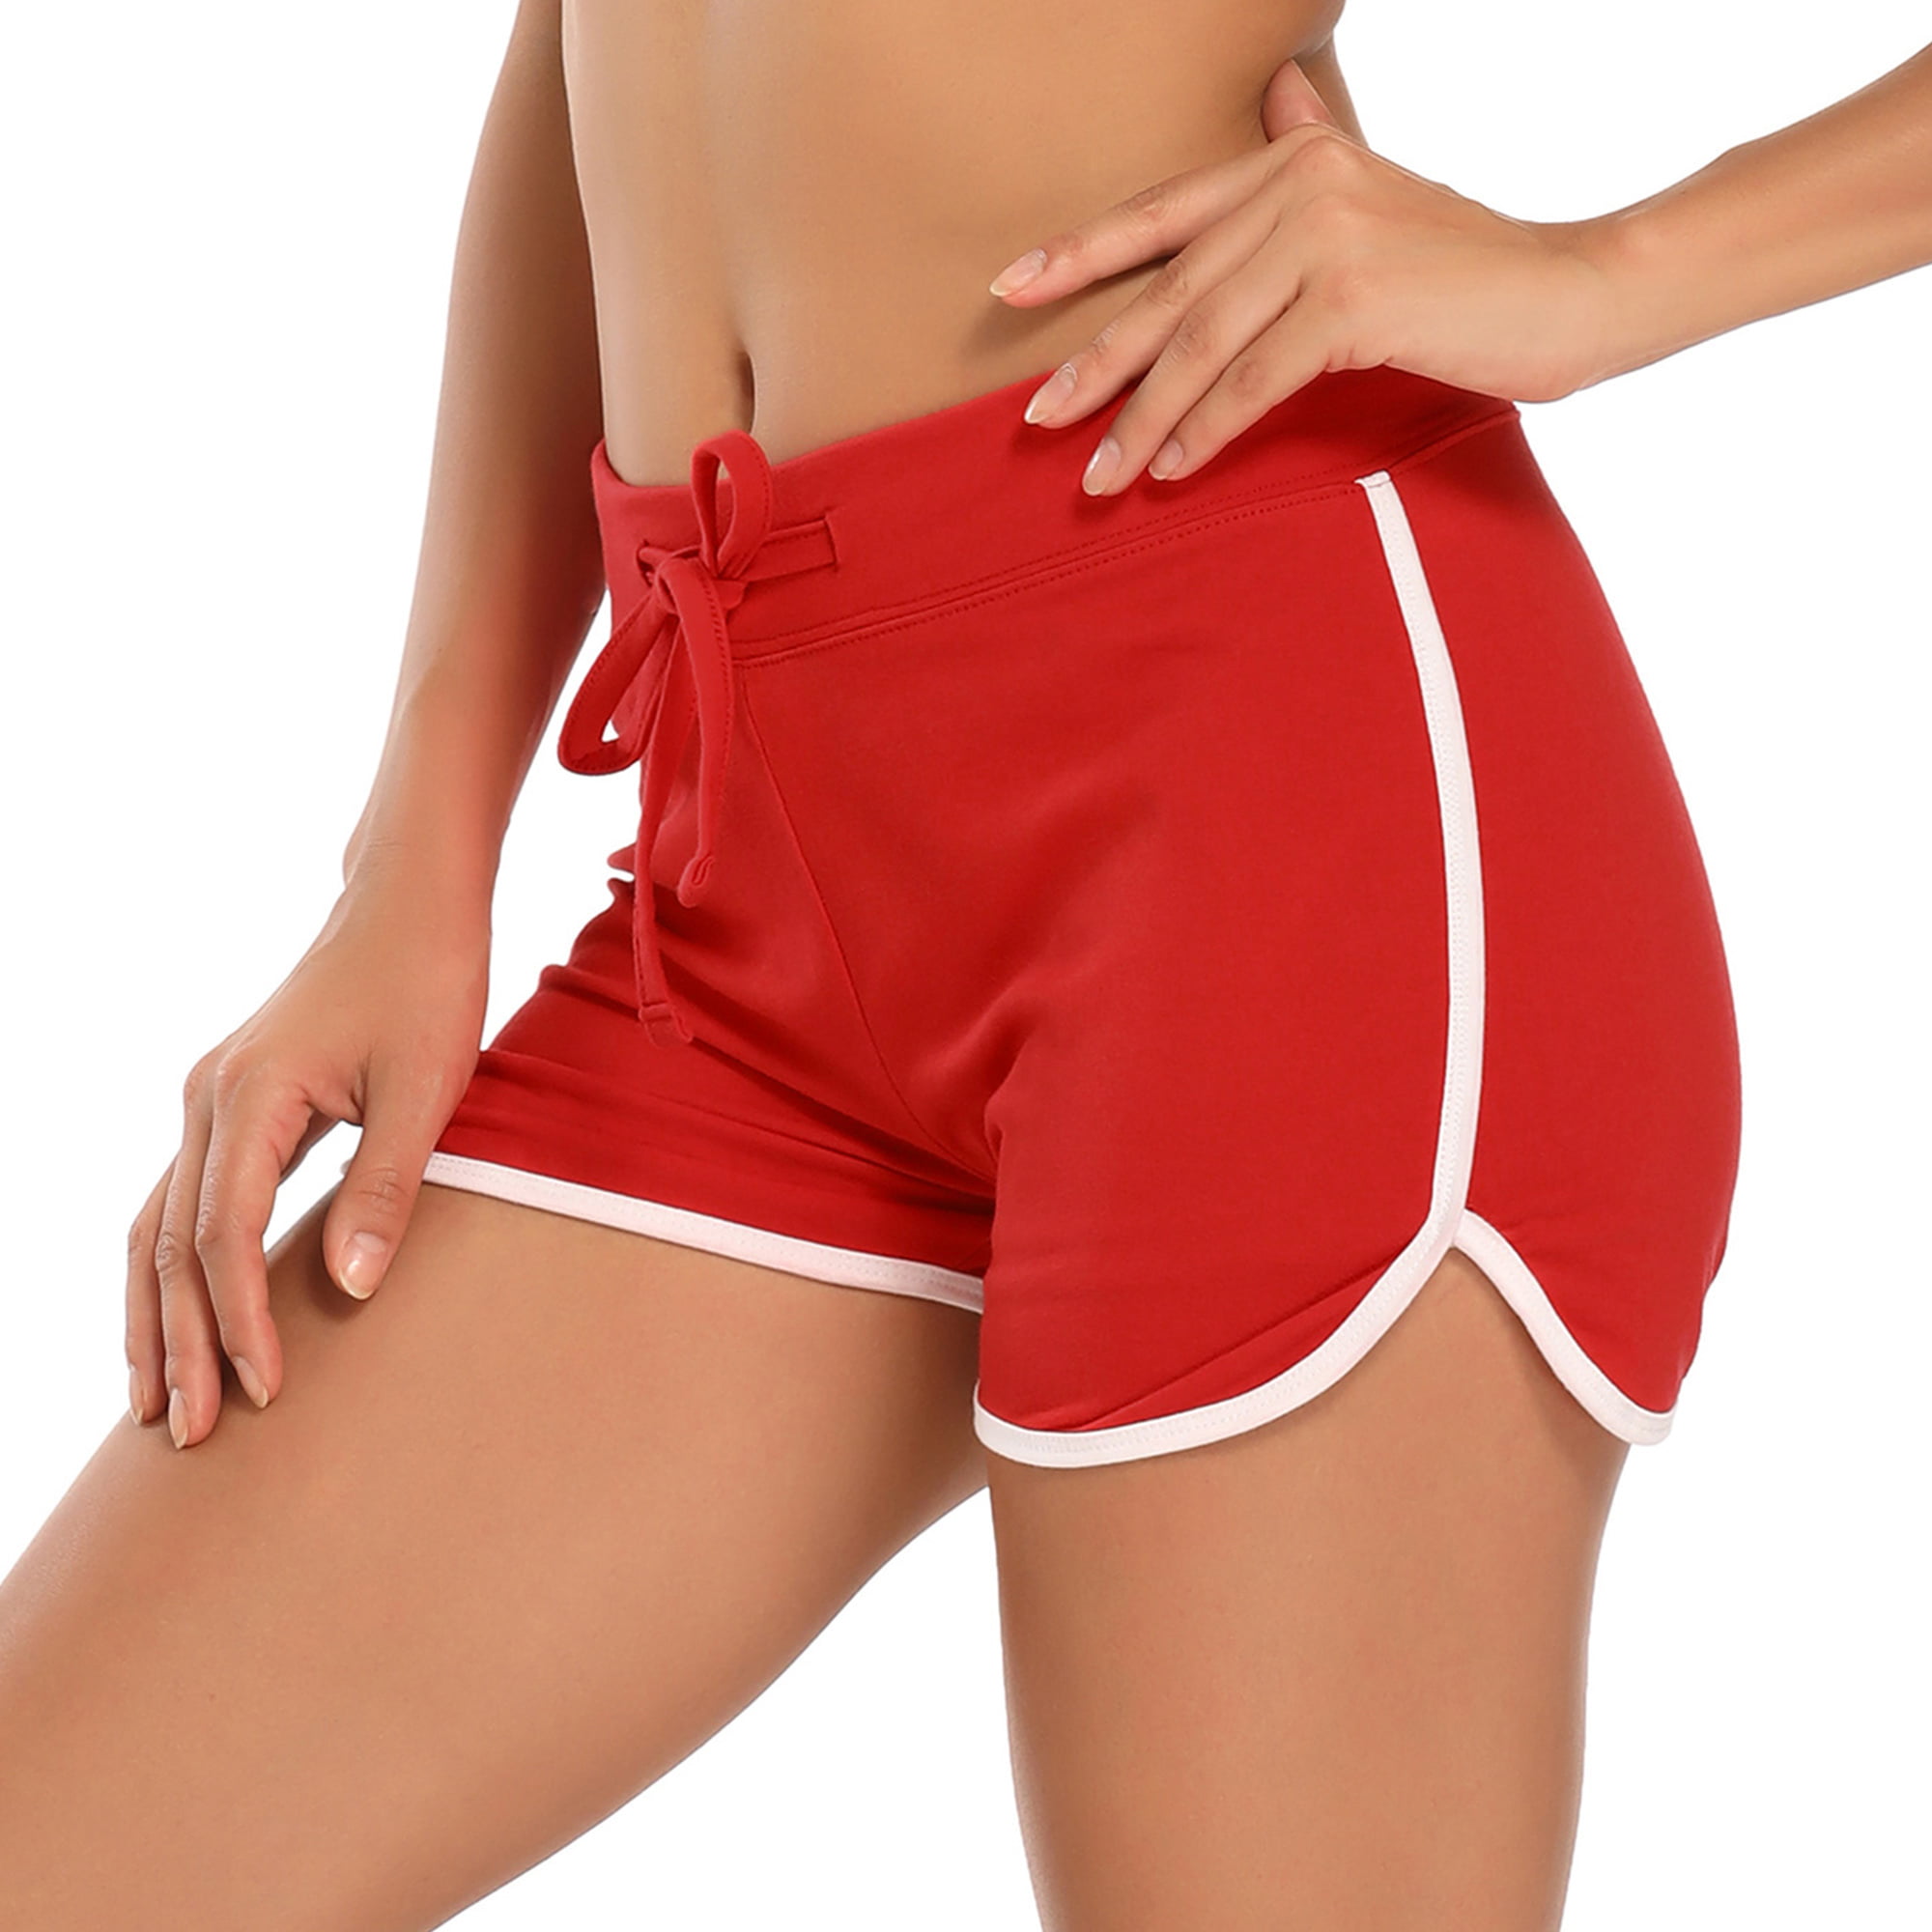 Dywer Thigh Length Ladies Red Gymwear Tight Short, Size: 30 at Rs 90/piece  in Muzaffarnagar